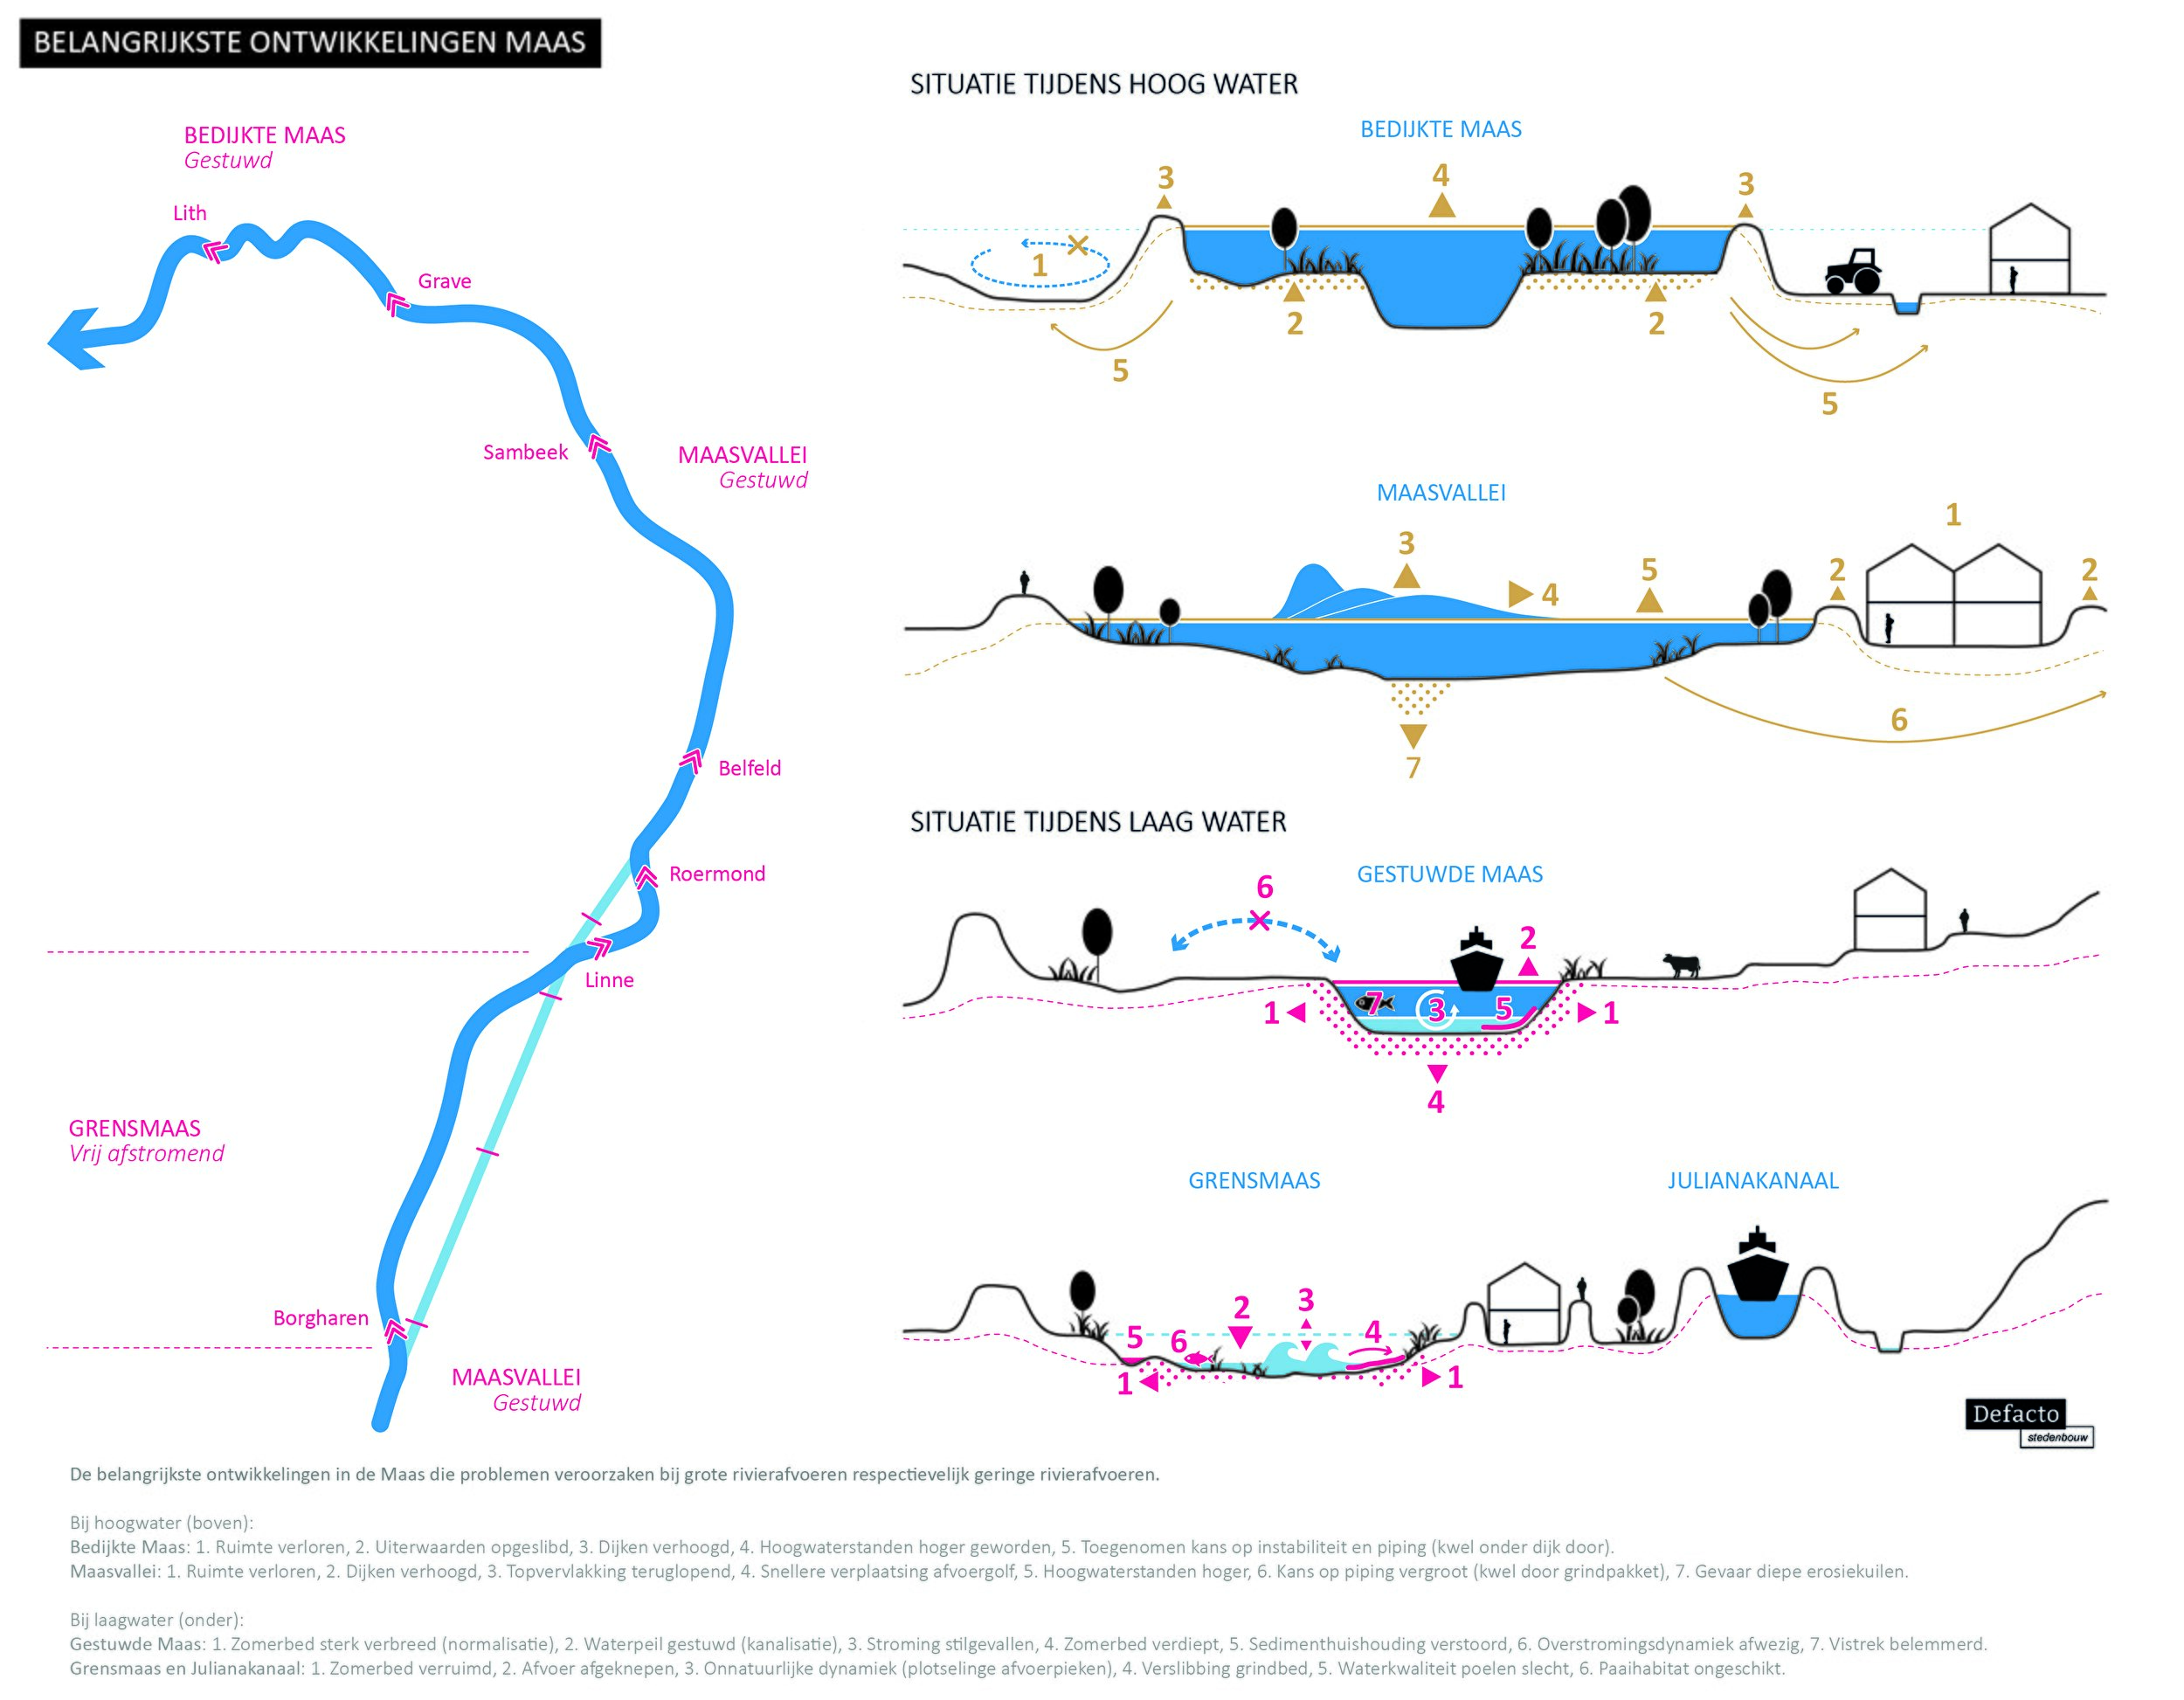 De ontwikkelingen van de Maas in kaart gebracht, zowel bij hoog- als bij laagwater (bron: Defacto)